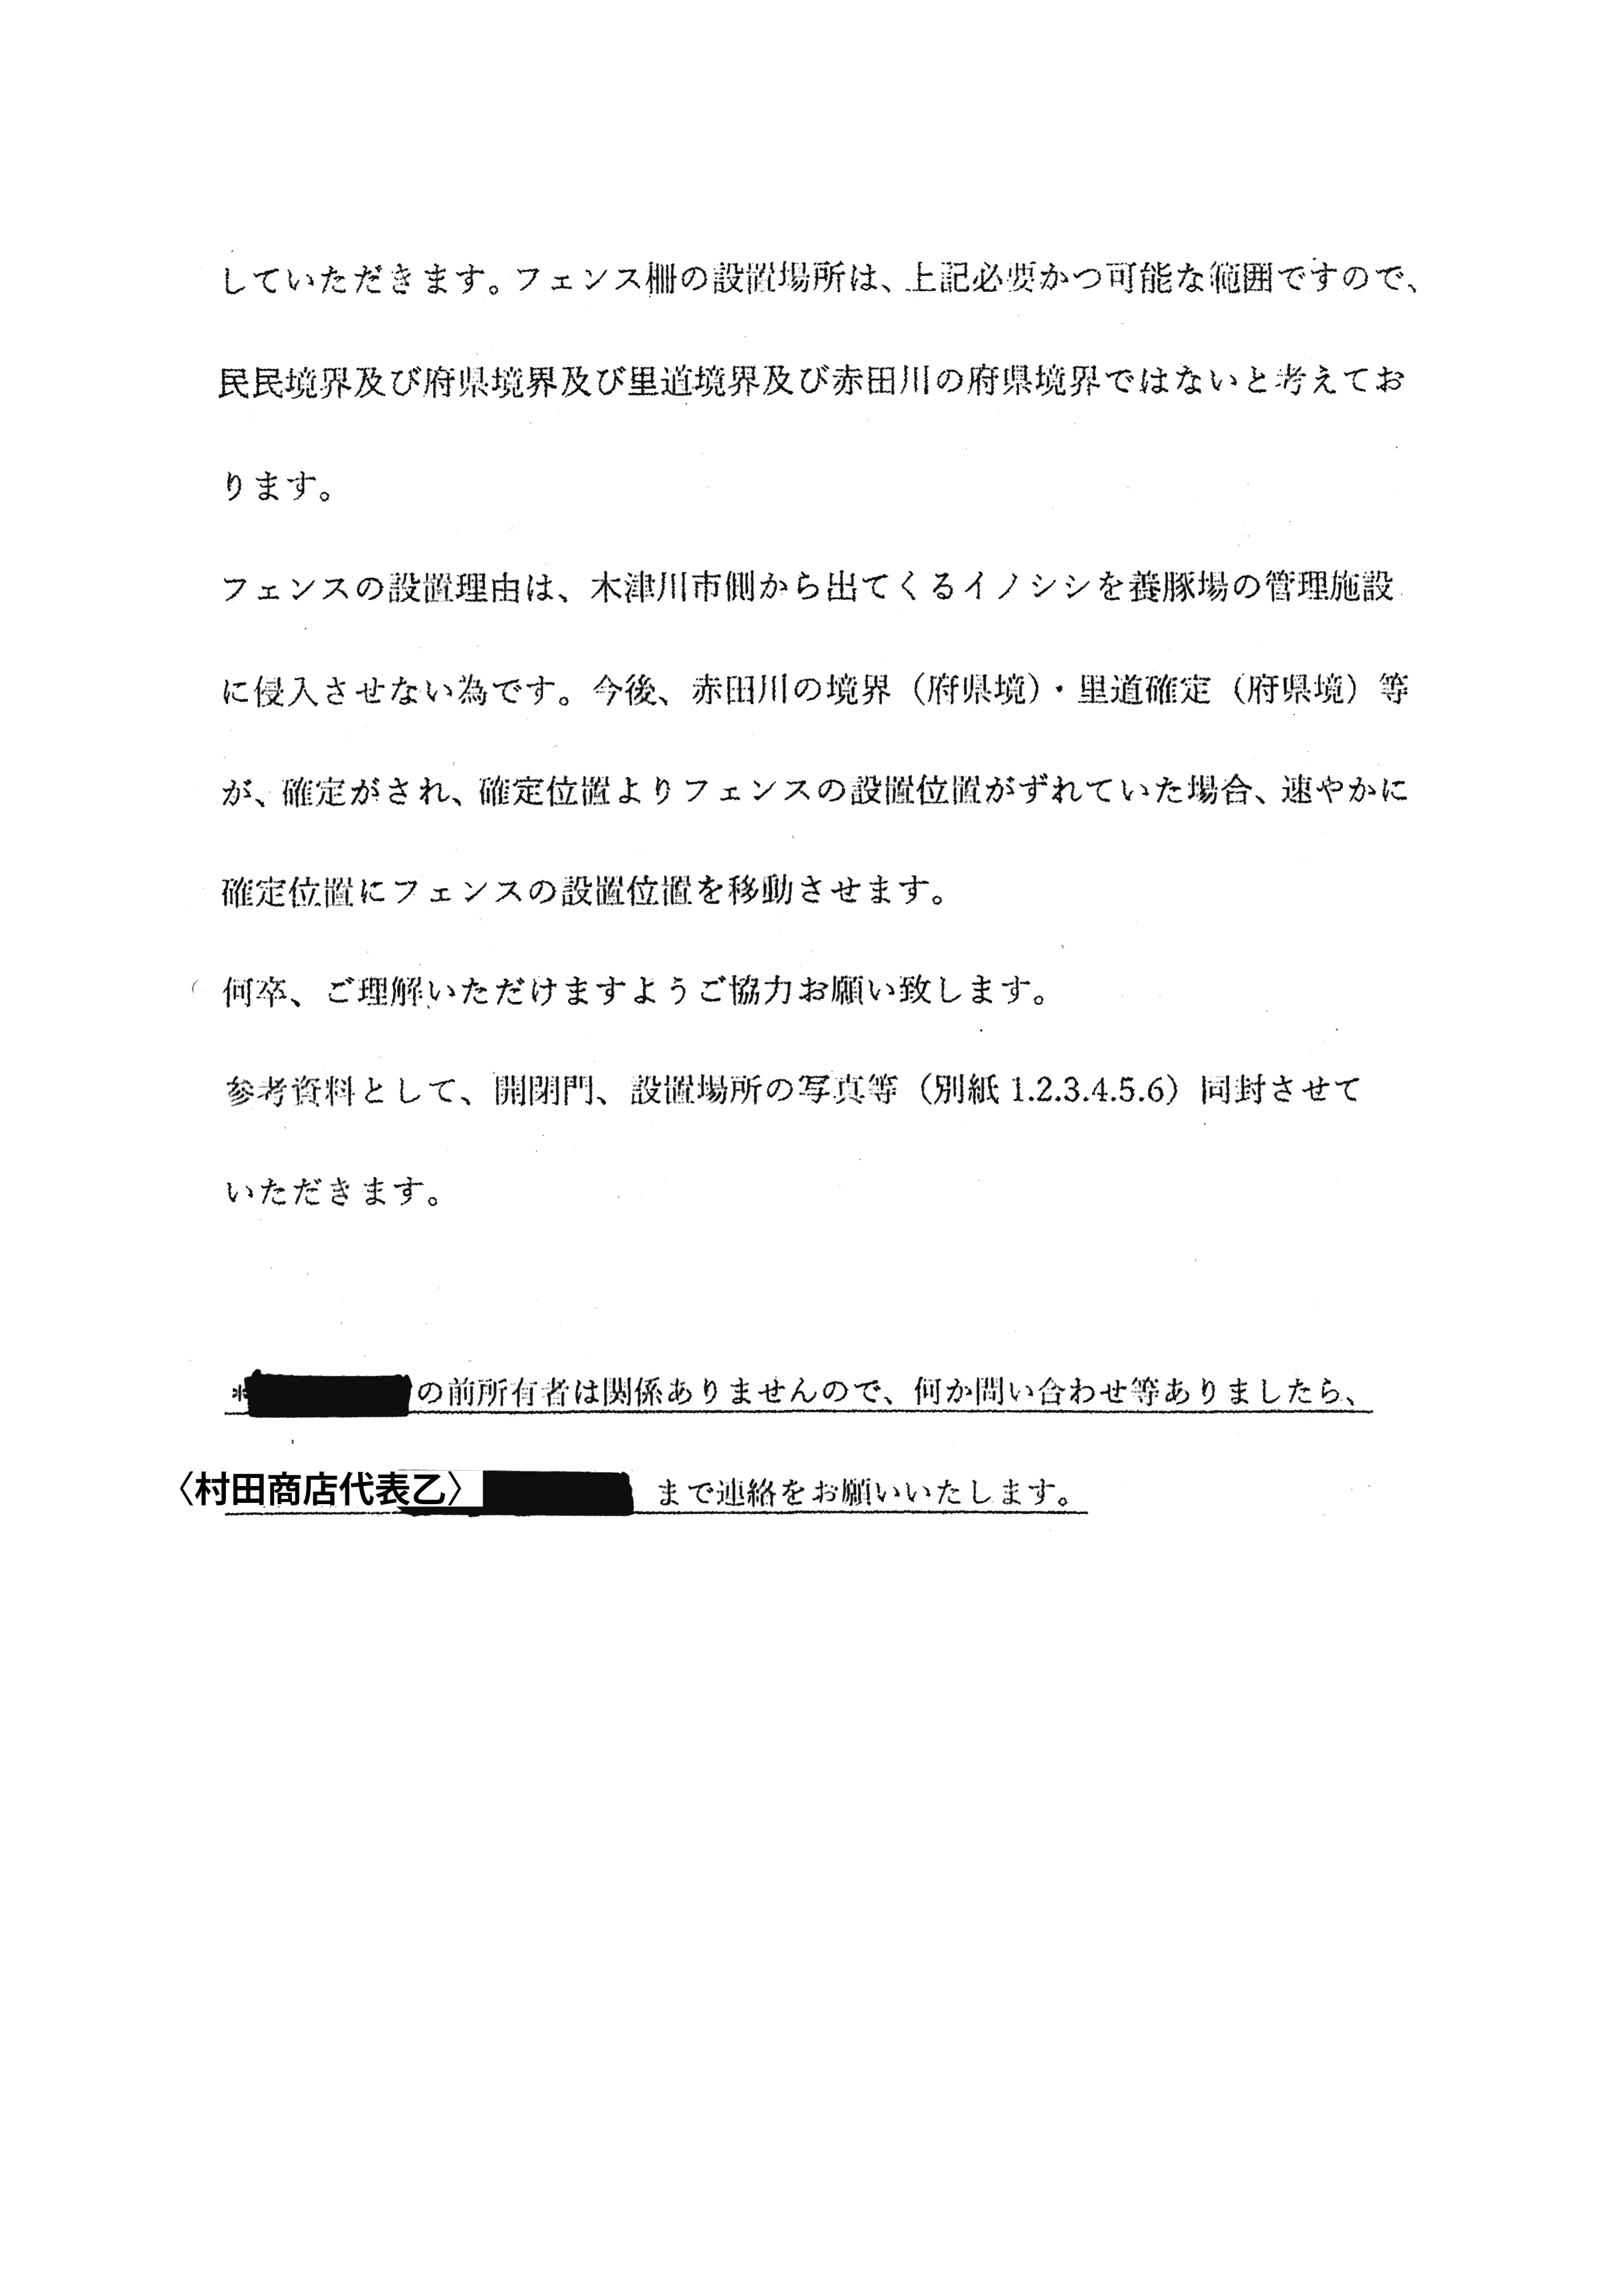 令和2年1月8日付連絡処理報告-村田商店から長尾2所有者に郵送された書面および添付資料について-04